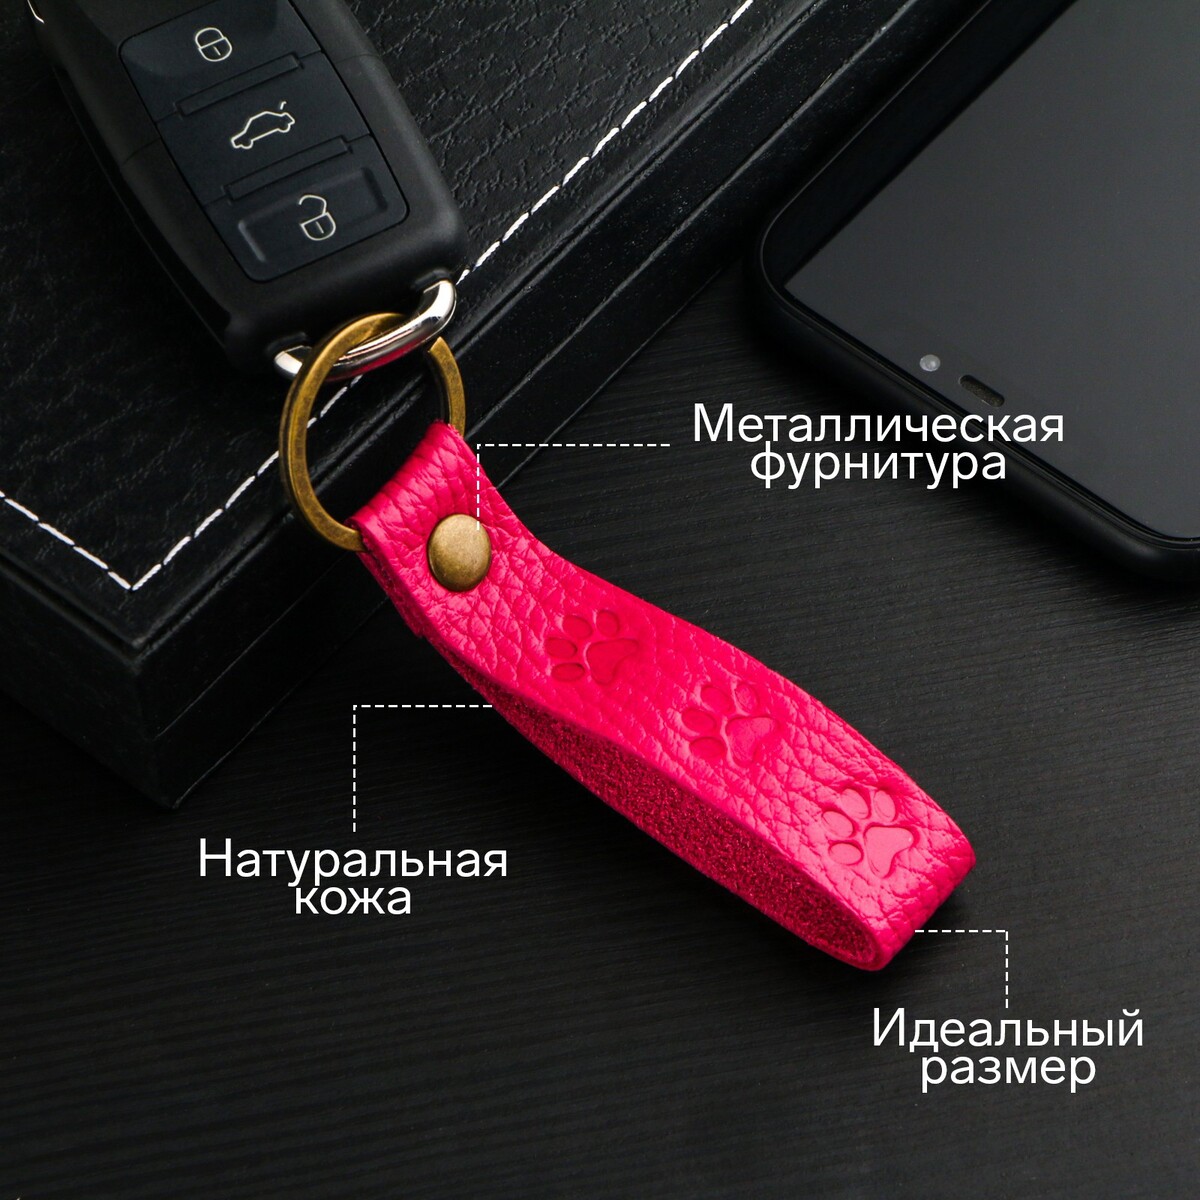 Брелок для автомобильного ключа, ремешок, натуральная кожа, розовый, лапка брелок для автомобильного ключа боксерская груша натуральная кожа